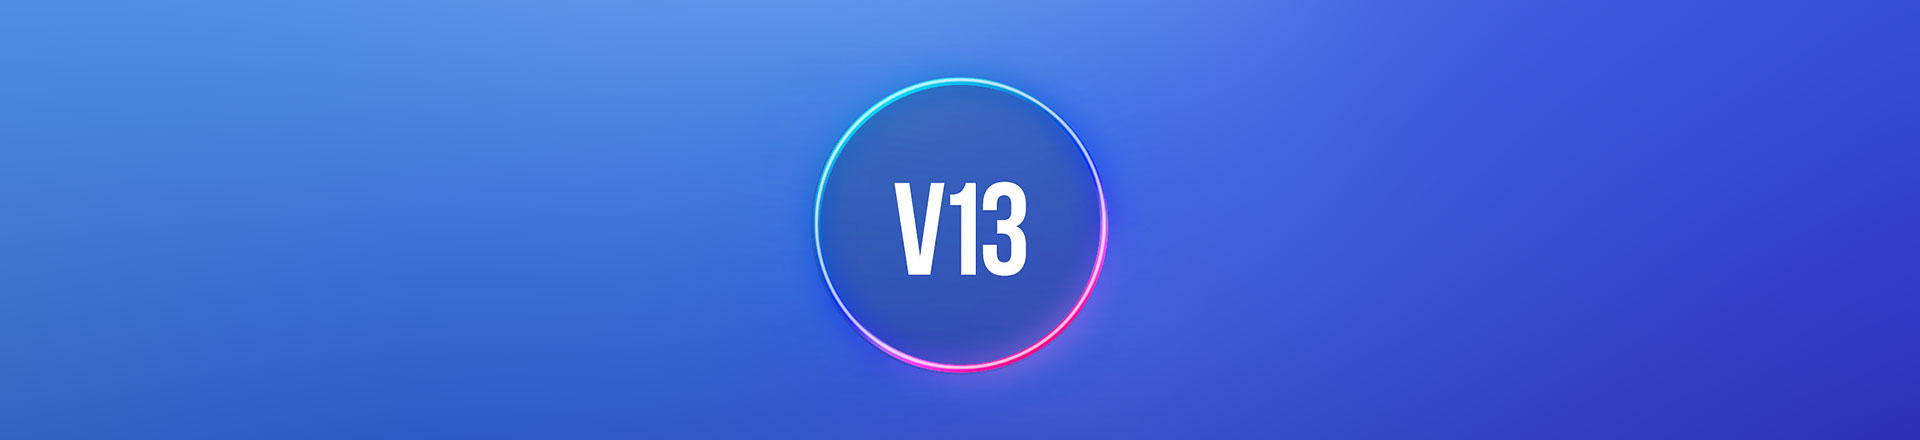 Waves aktualizuje SoundGrid do wersji V13